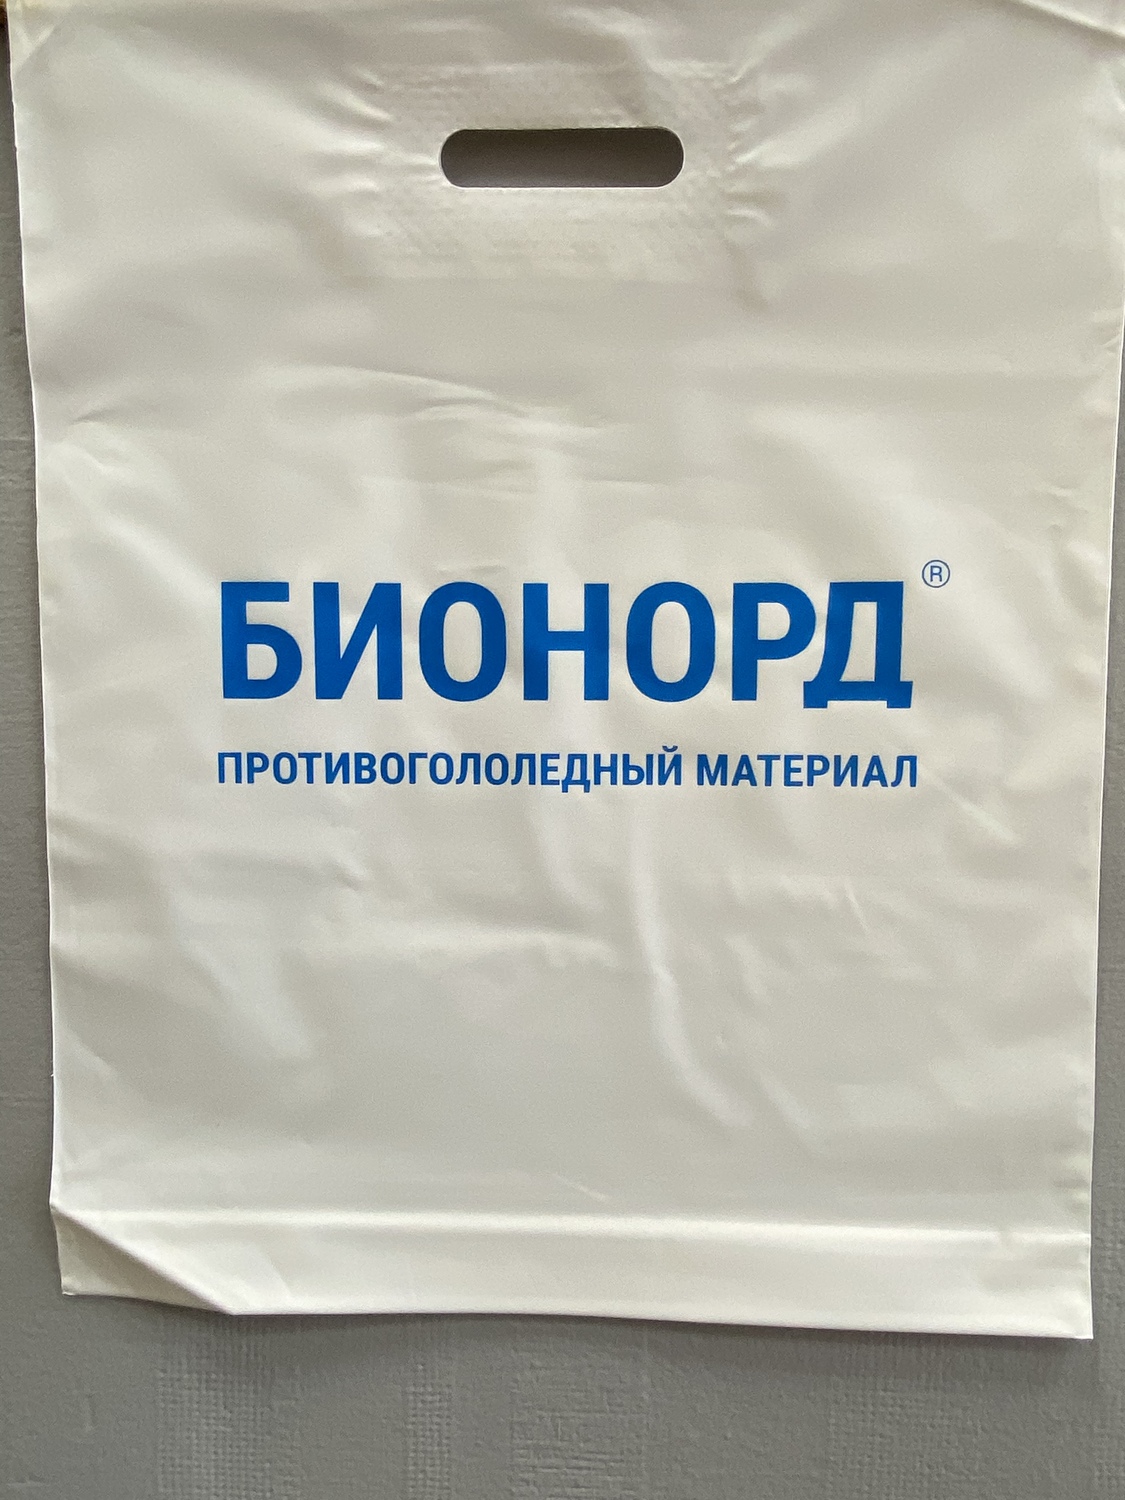 Печать на пакетах Пермь